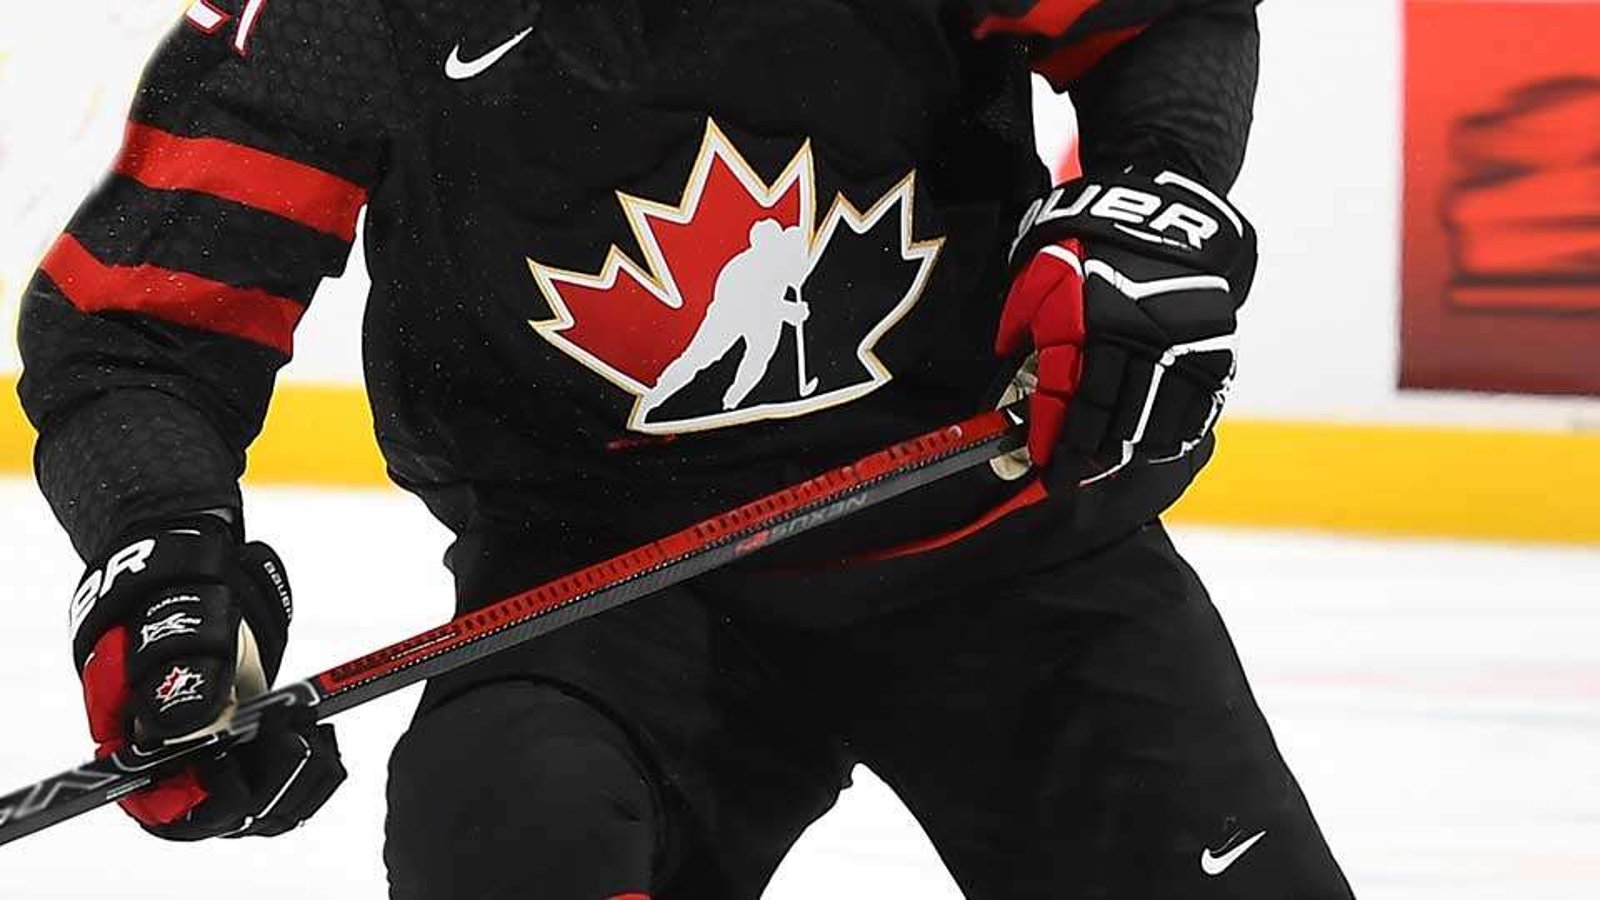 VIOL COLLECTIF : L'enquête de Hockey Canada serait officiellement complétée